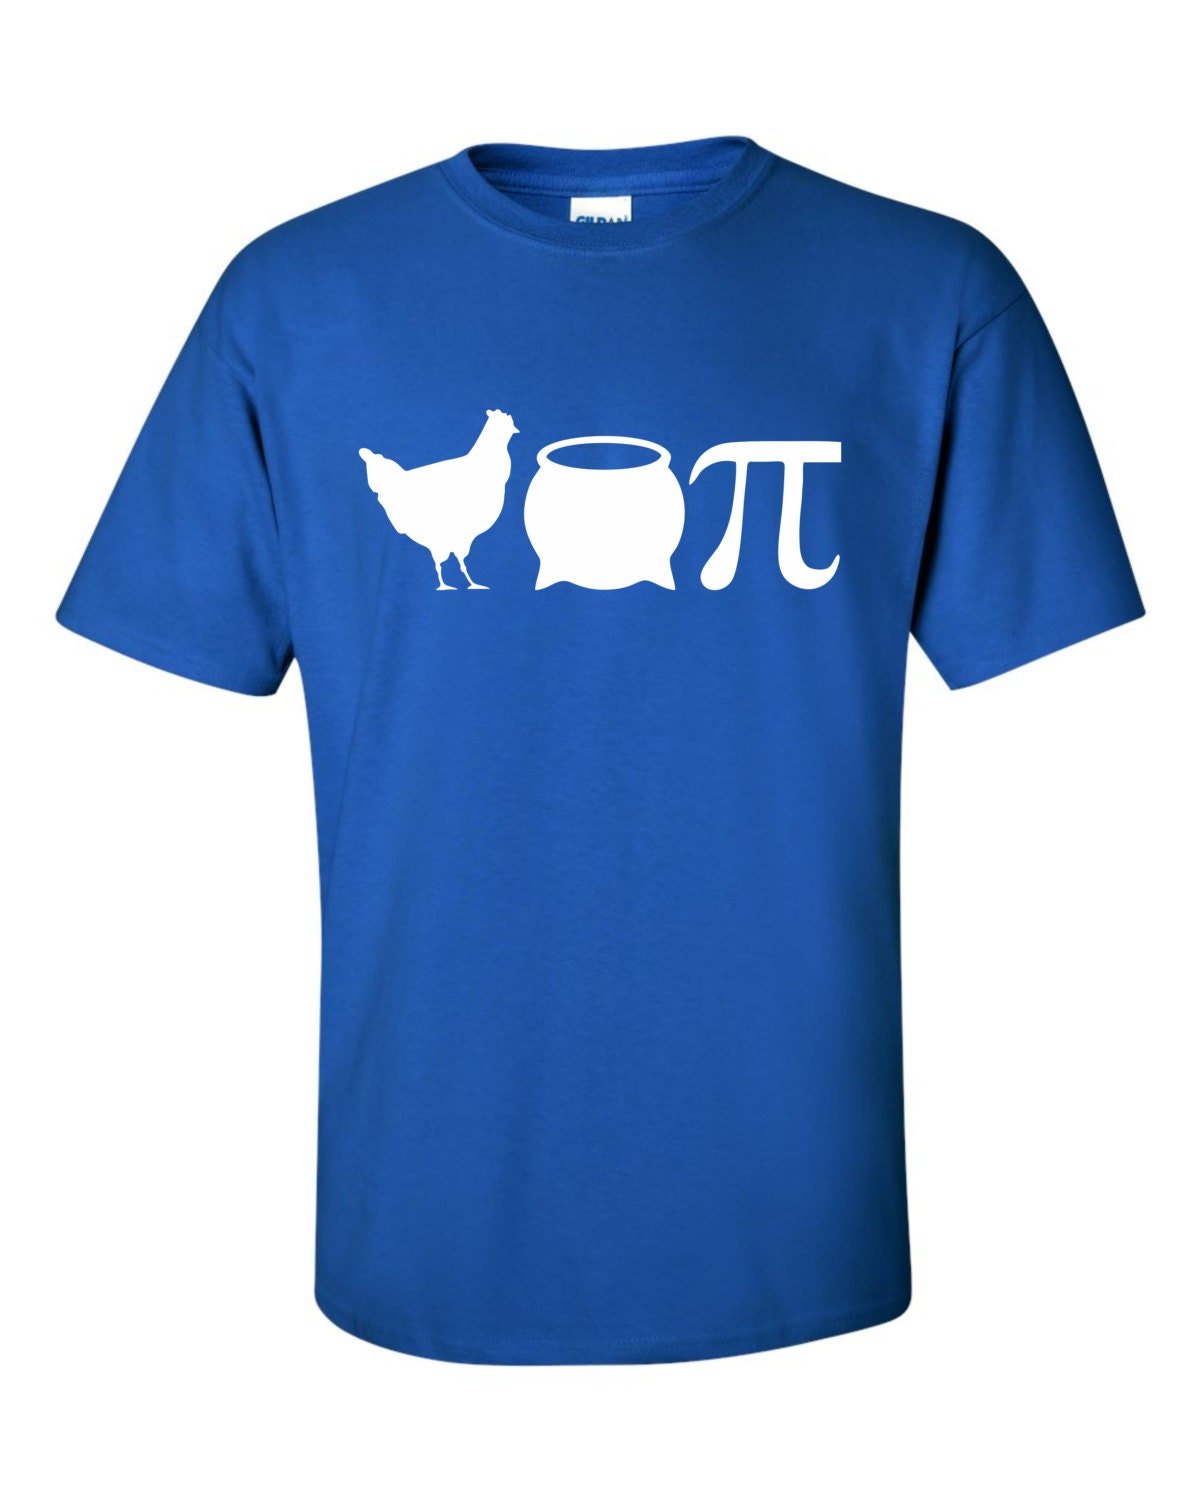 Chicken Pot Pi T Shirt - SBS T Shop